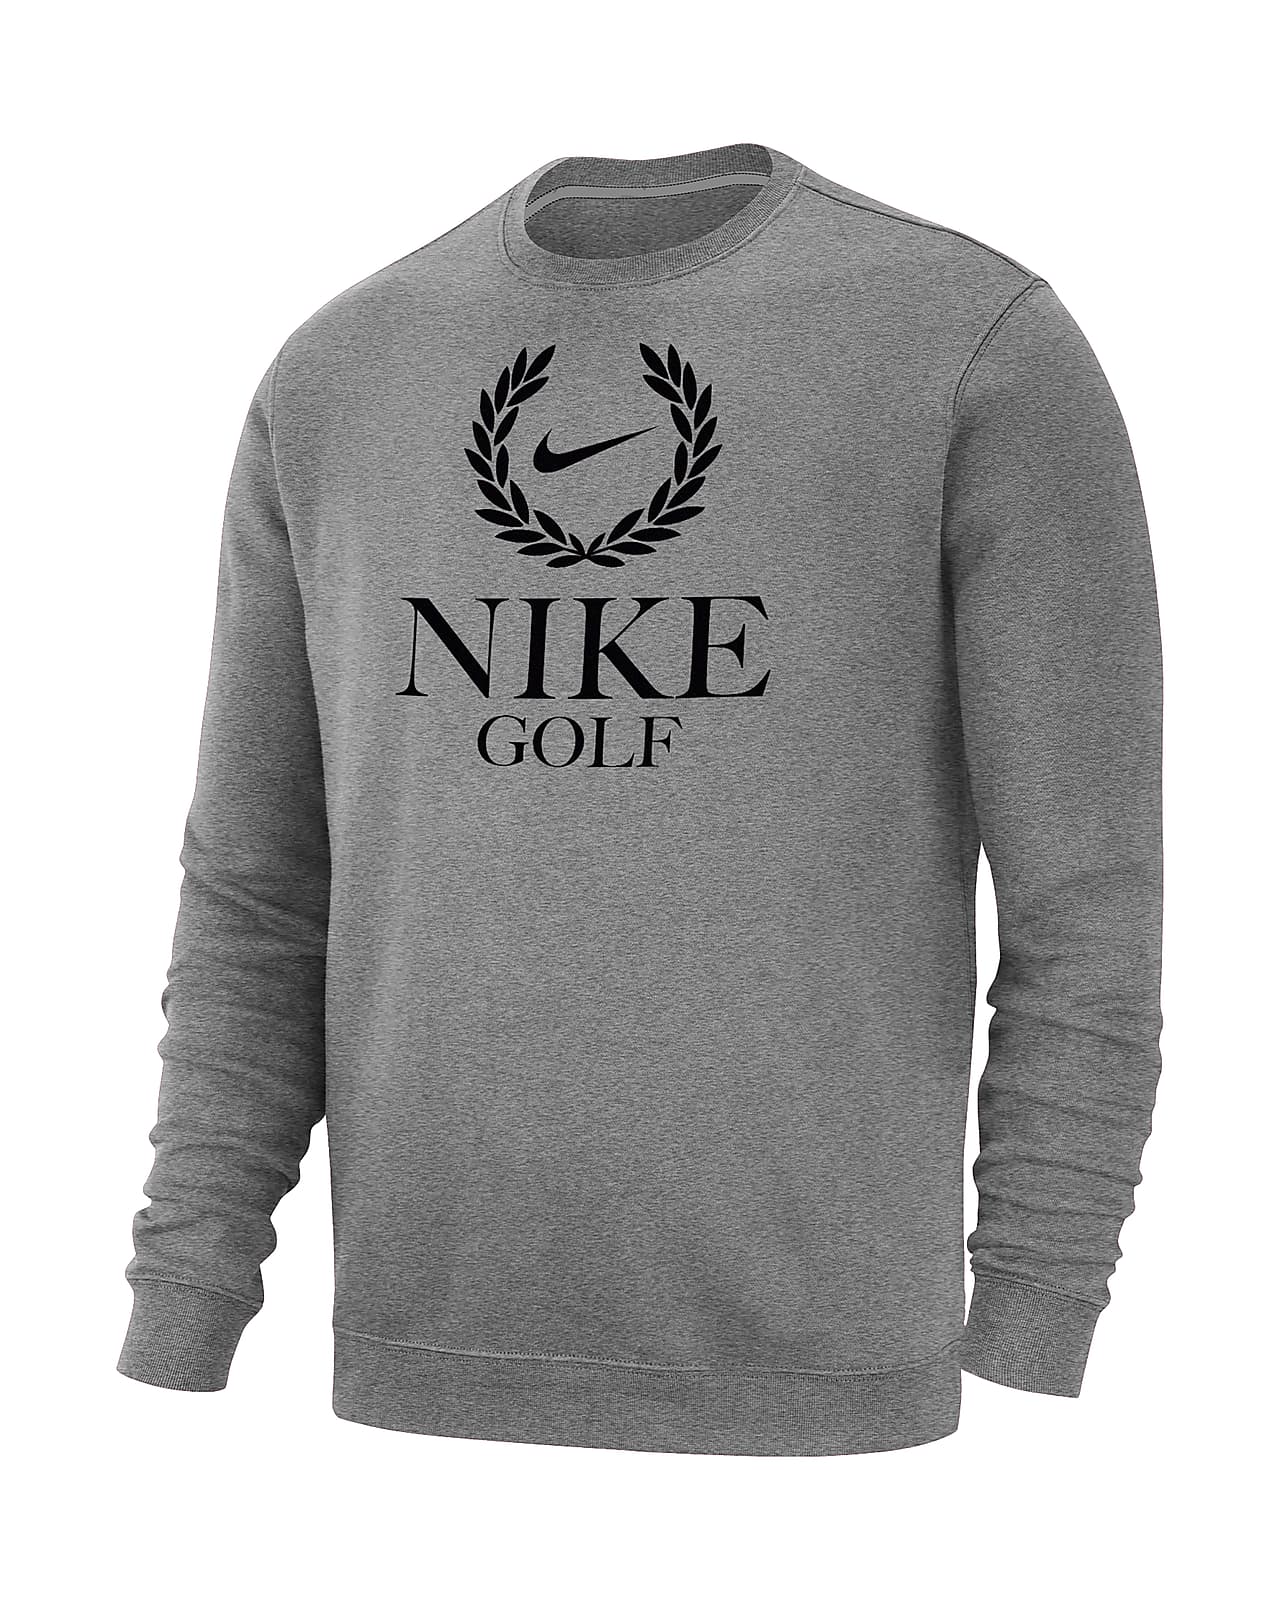 Nike Golf Club Fleece Men's Crew-Neck Sweatshirt